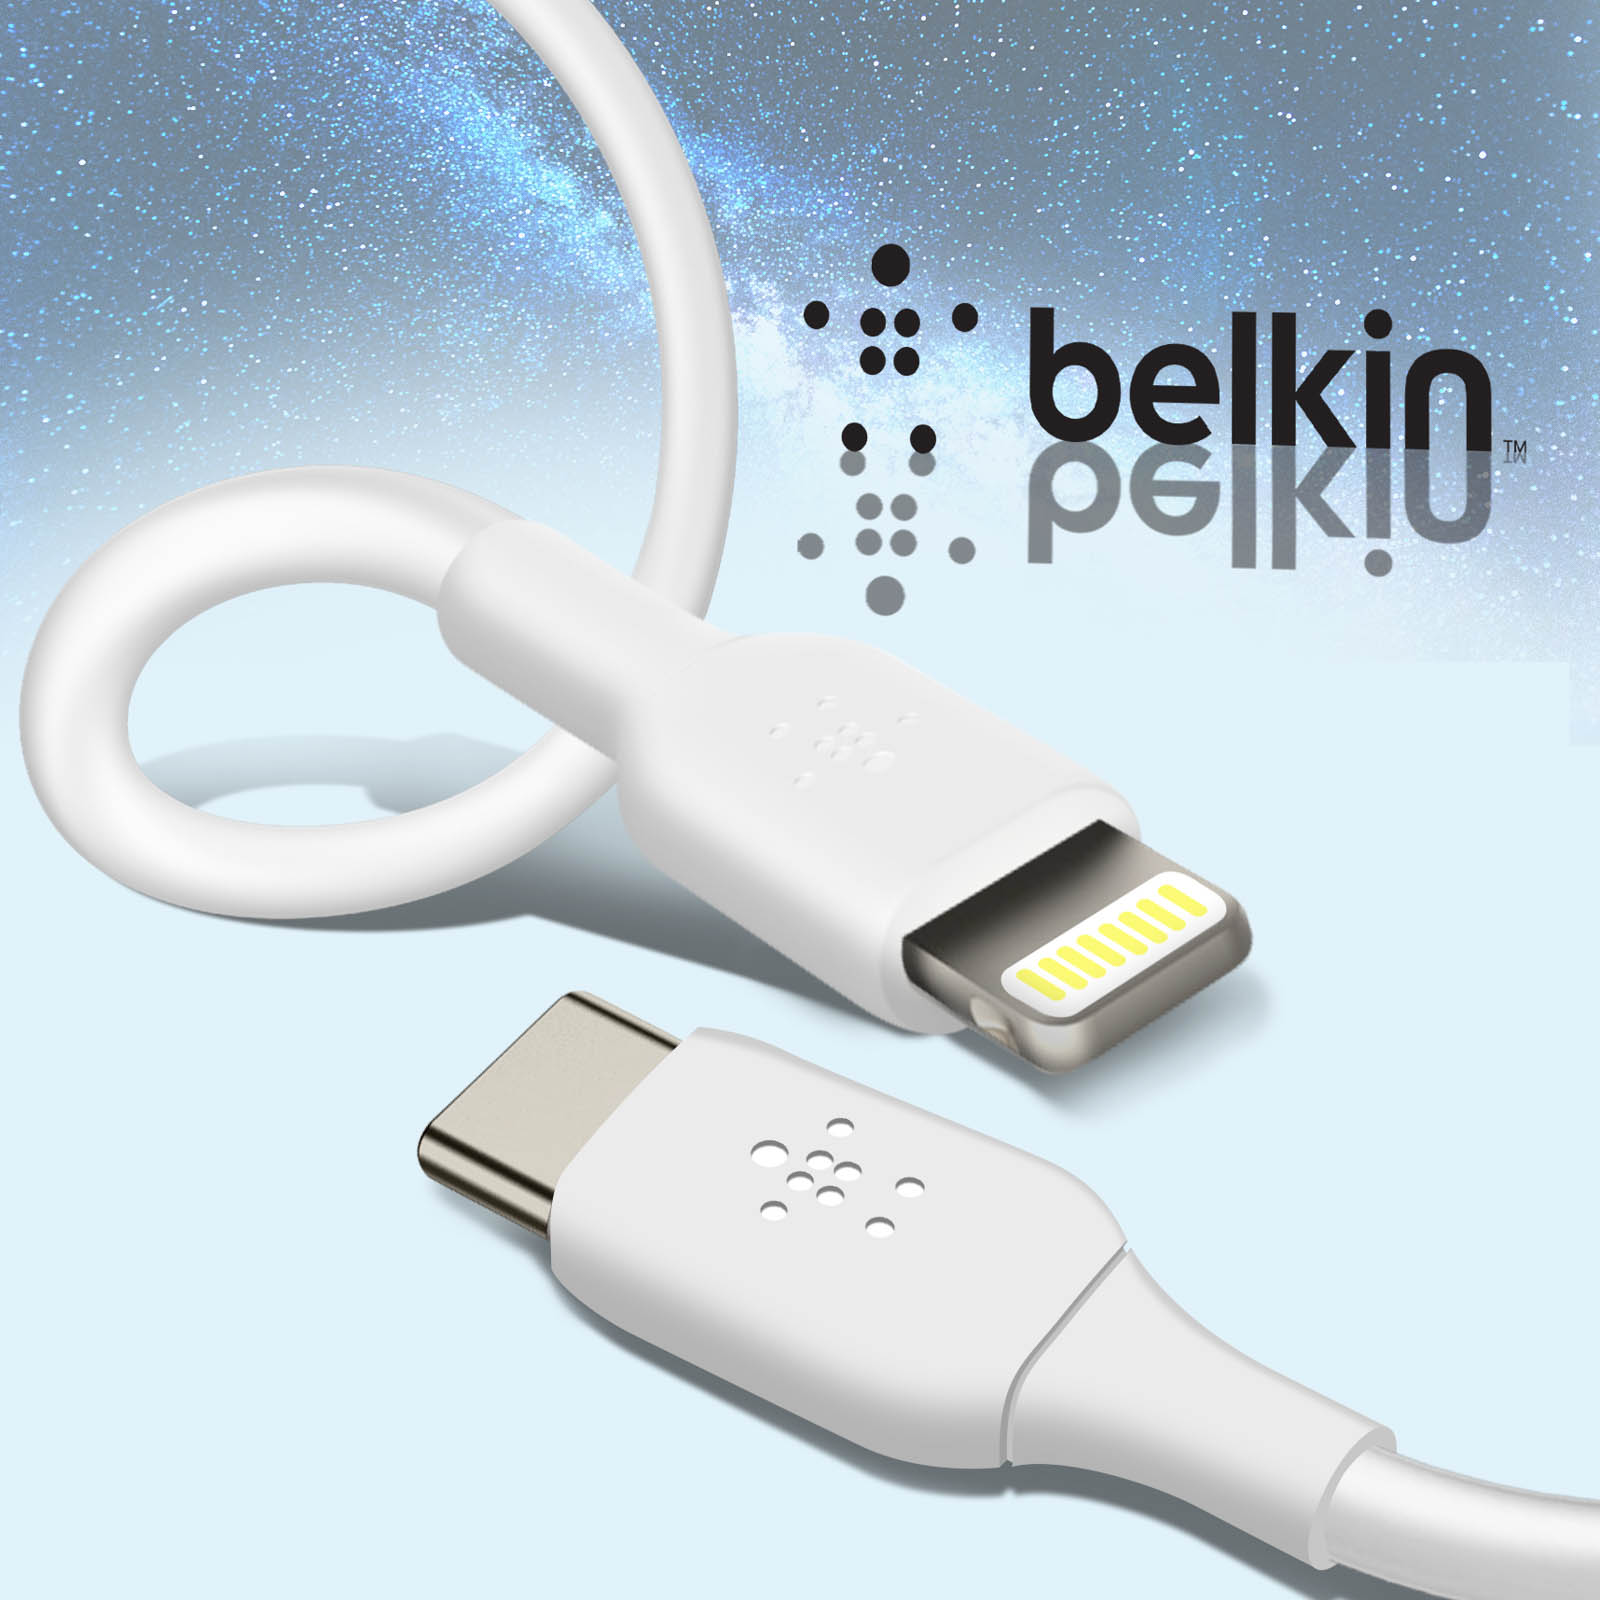 Chollo! Cargador Belkin USB-C iPhone y iPad sólo 9.90€- Blog de Chollos